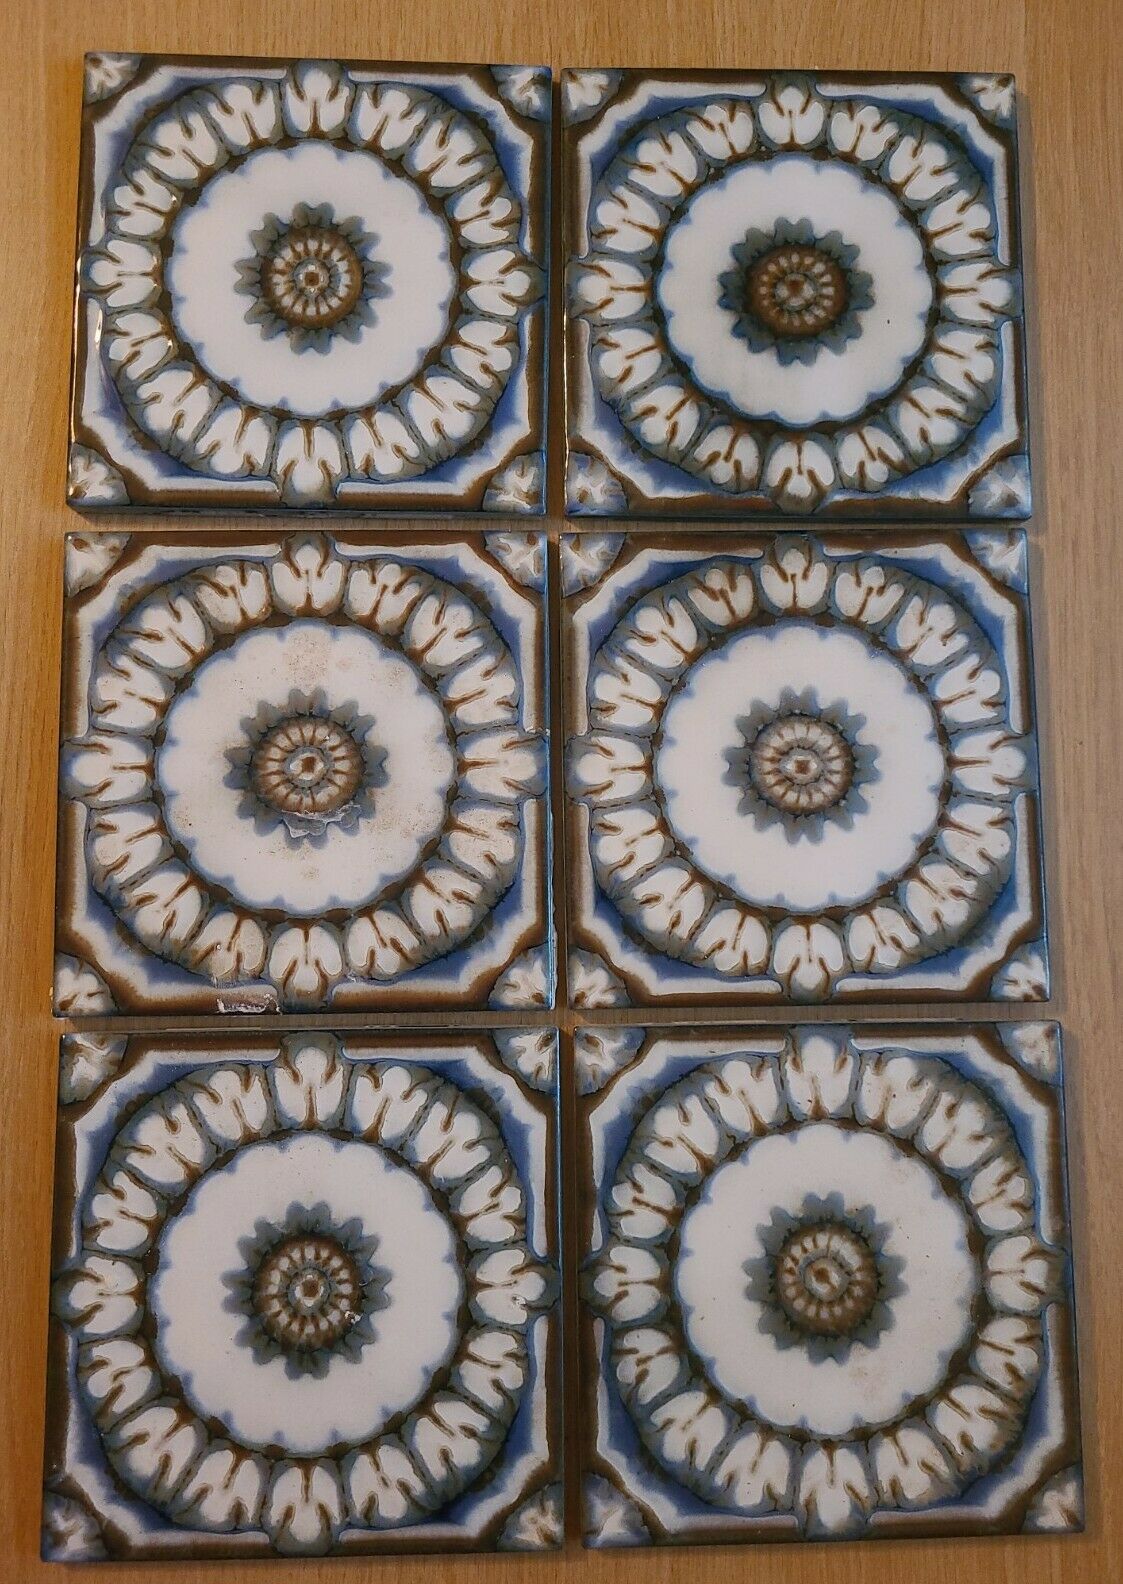 6 Vintage Kaneki Japan Ceramic Tile 6" X 6"